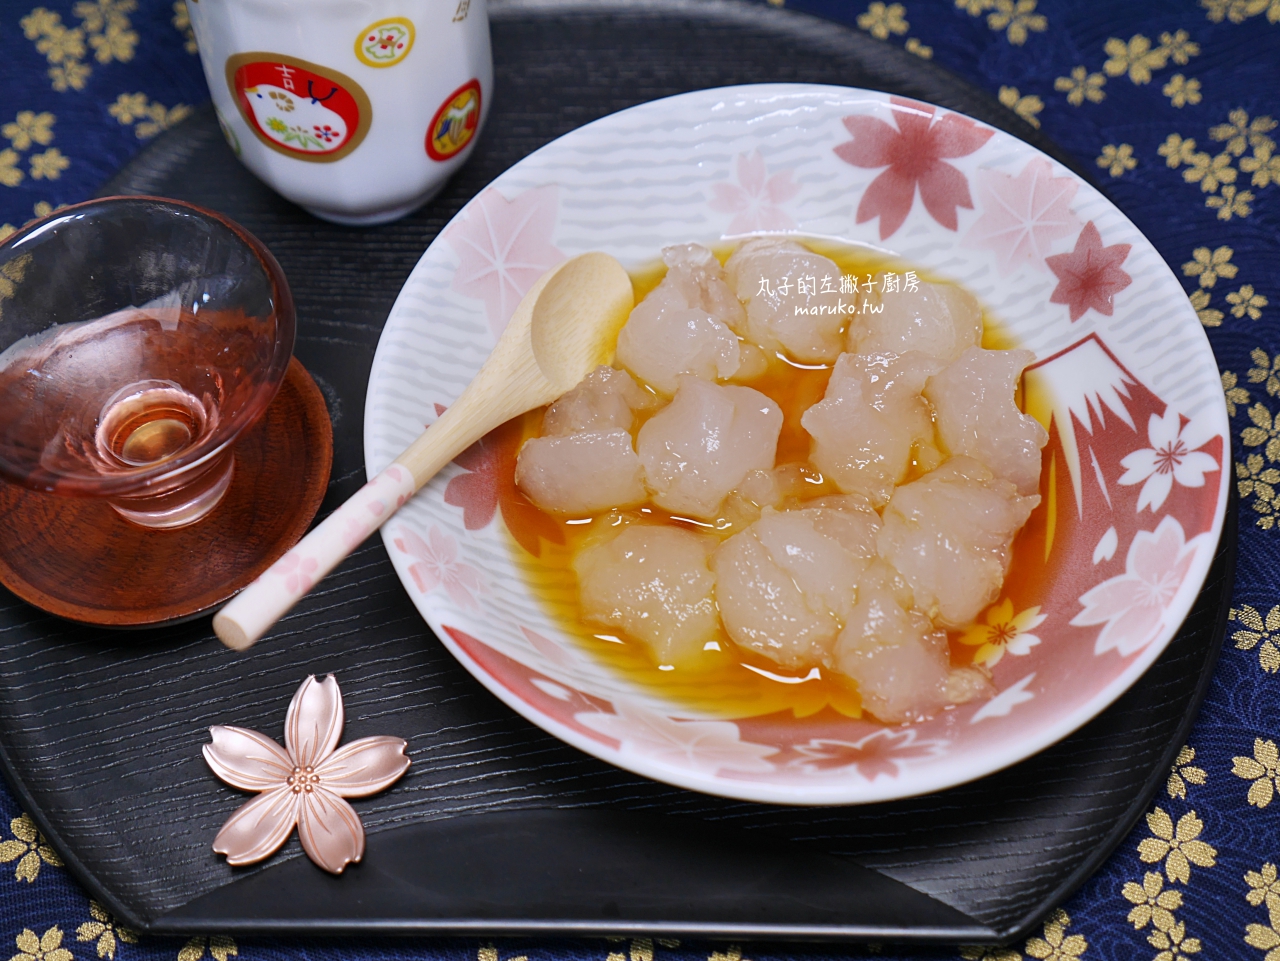 【食譜】7種日式傳統點心 包含鯛魚燒、糯米糰子、草苺大福、花見糰子食譜分享 @Maruko與美食有個約會